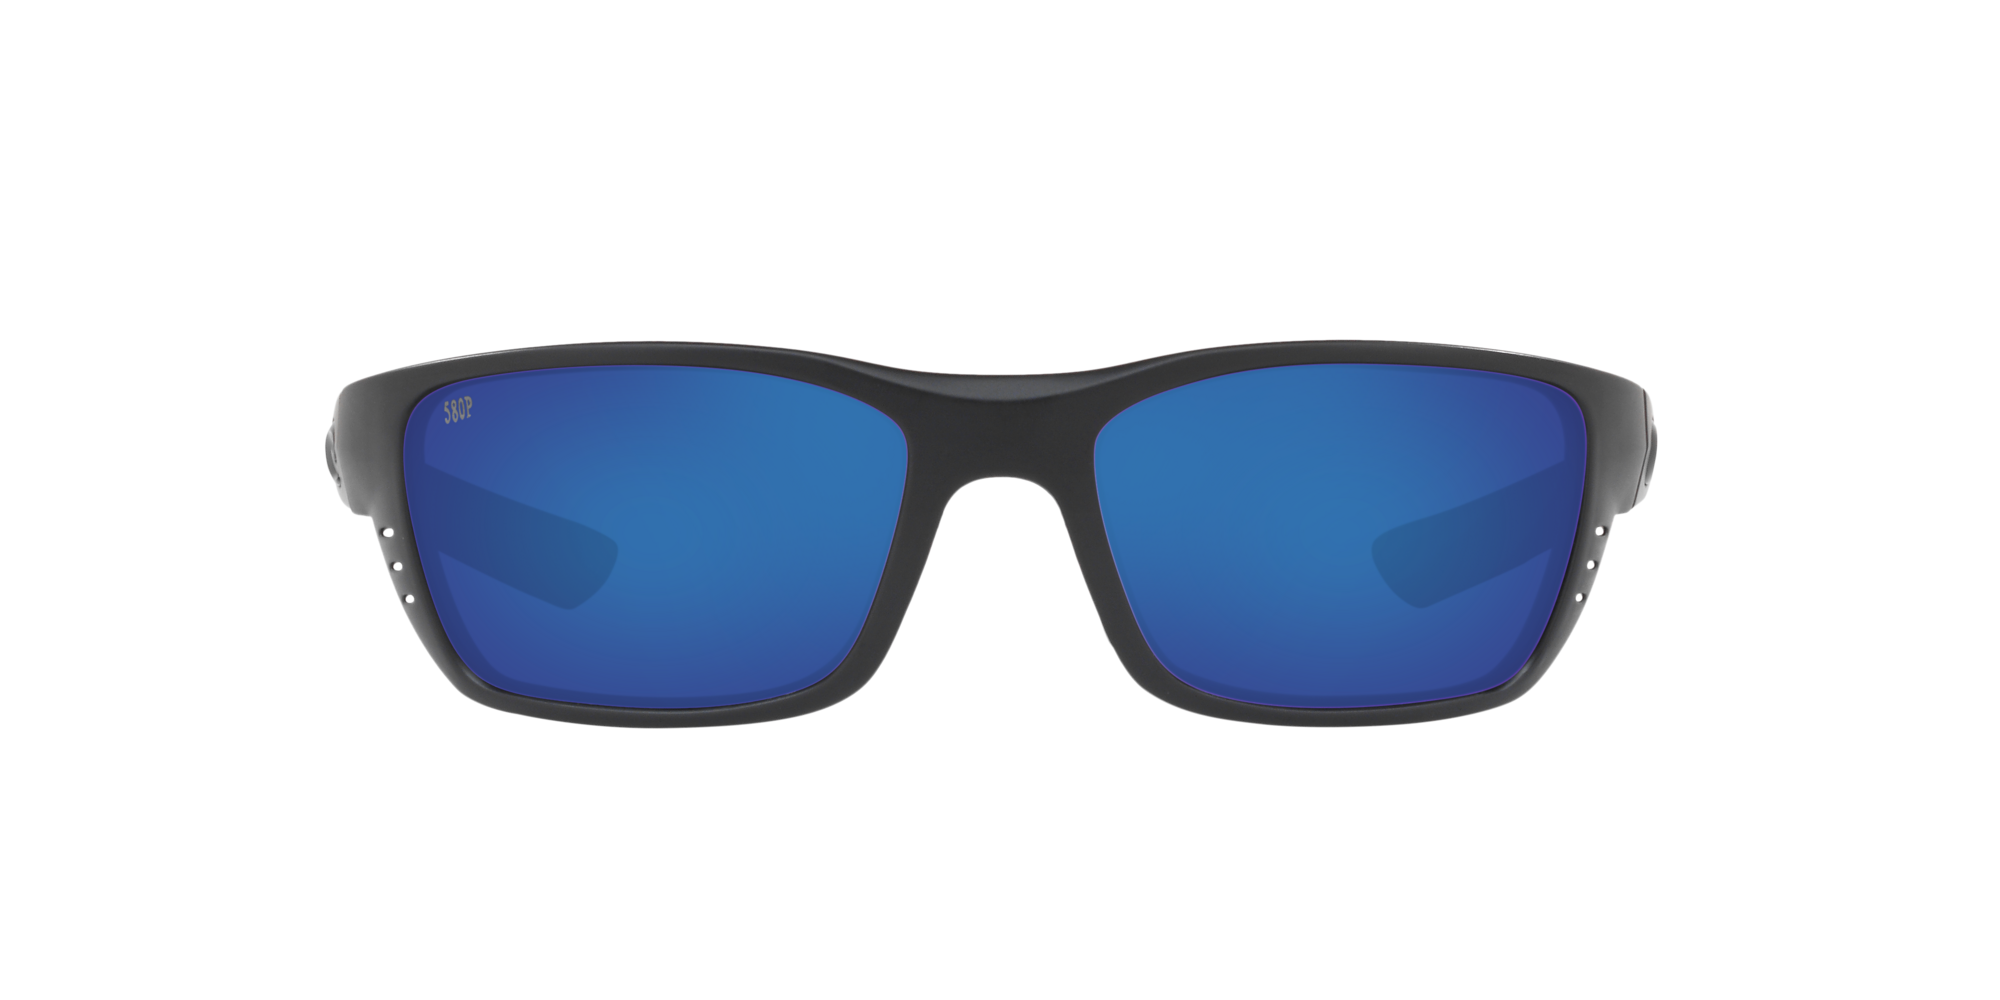 Whitetip Readers Polarized Sunglasses in Blue Mirror Costa Del Mar®